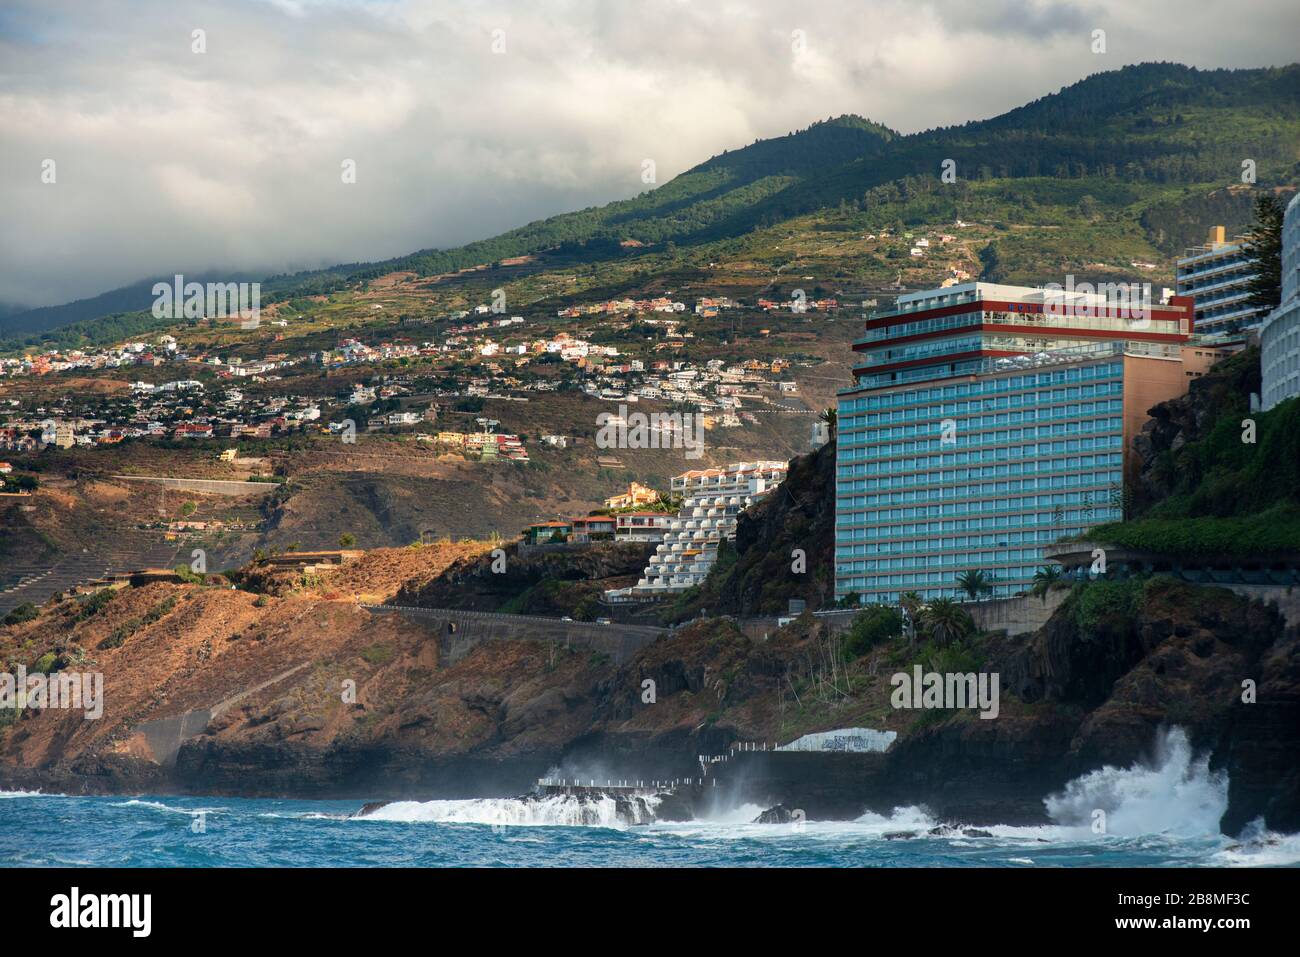 Semiramis hotel canarias fotografías e imágenes de alta resolución - Alamy